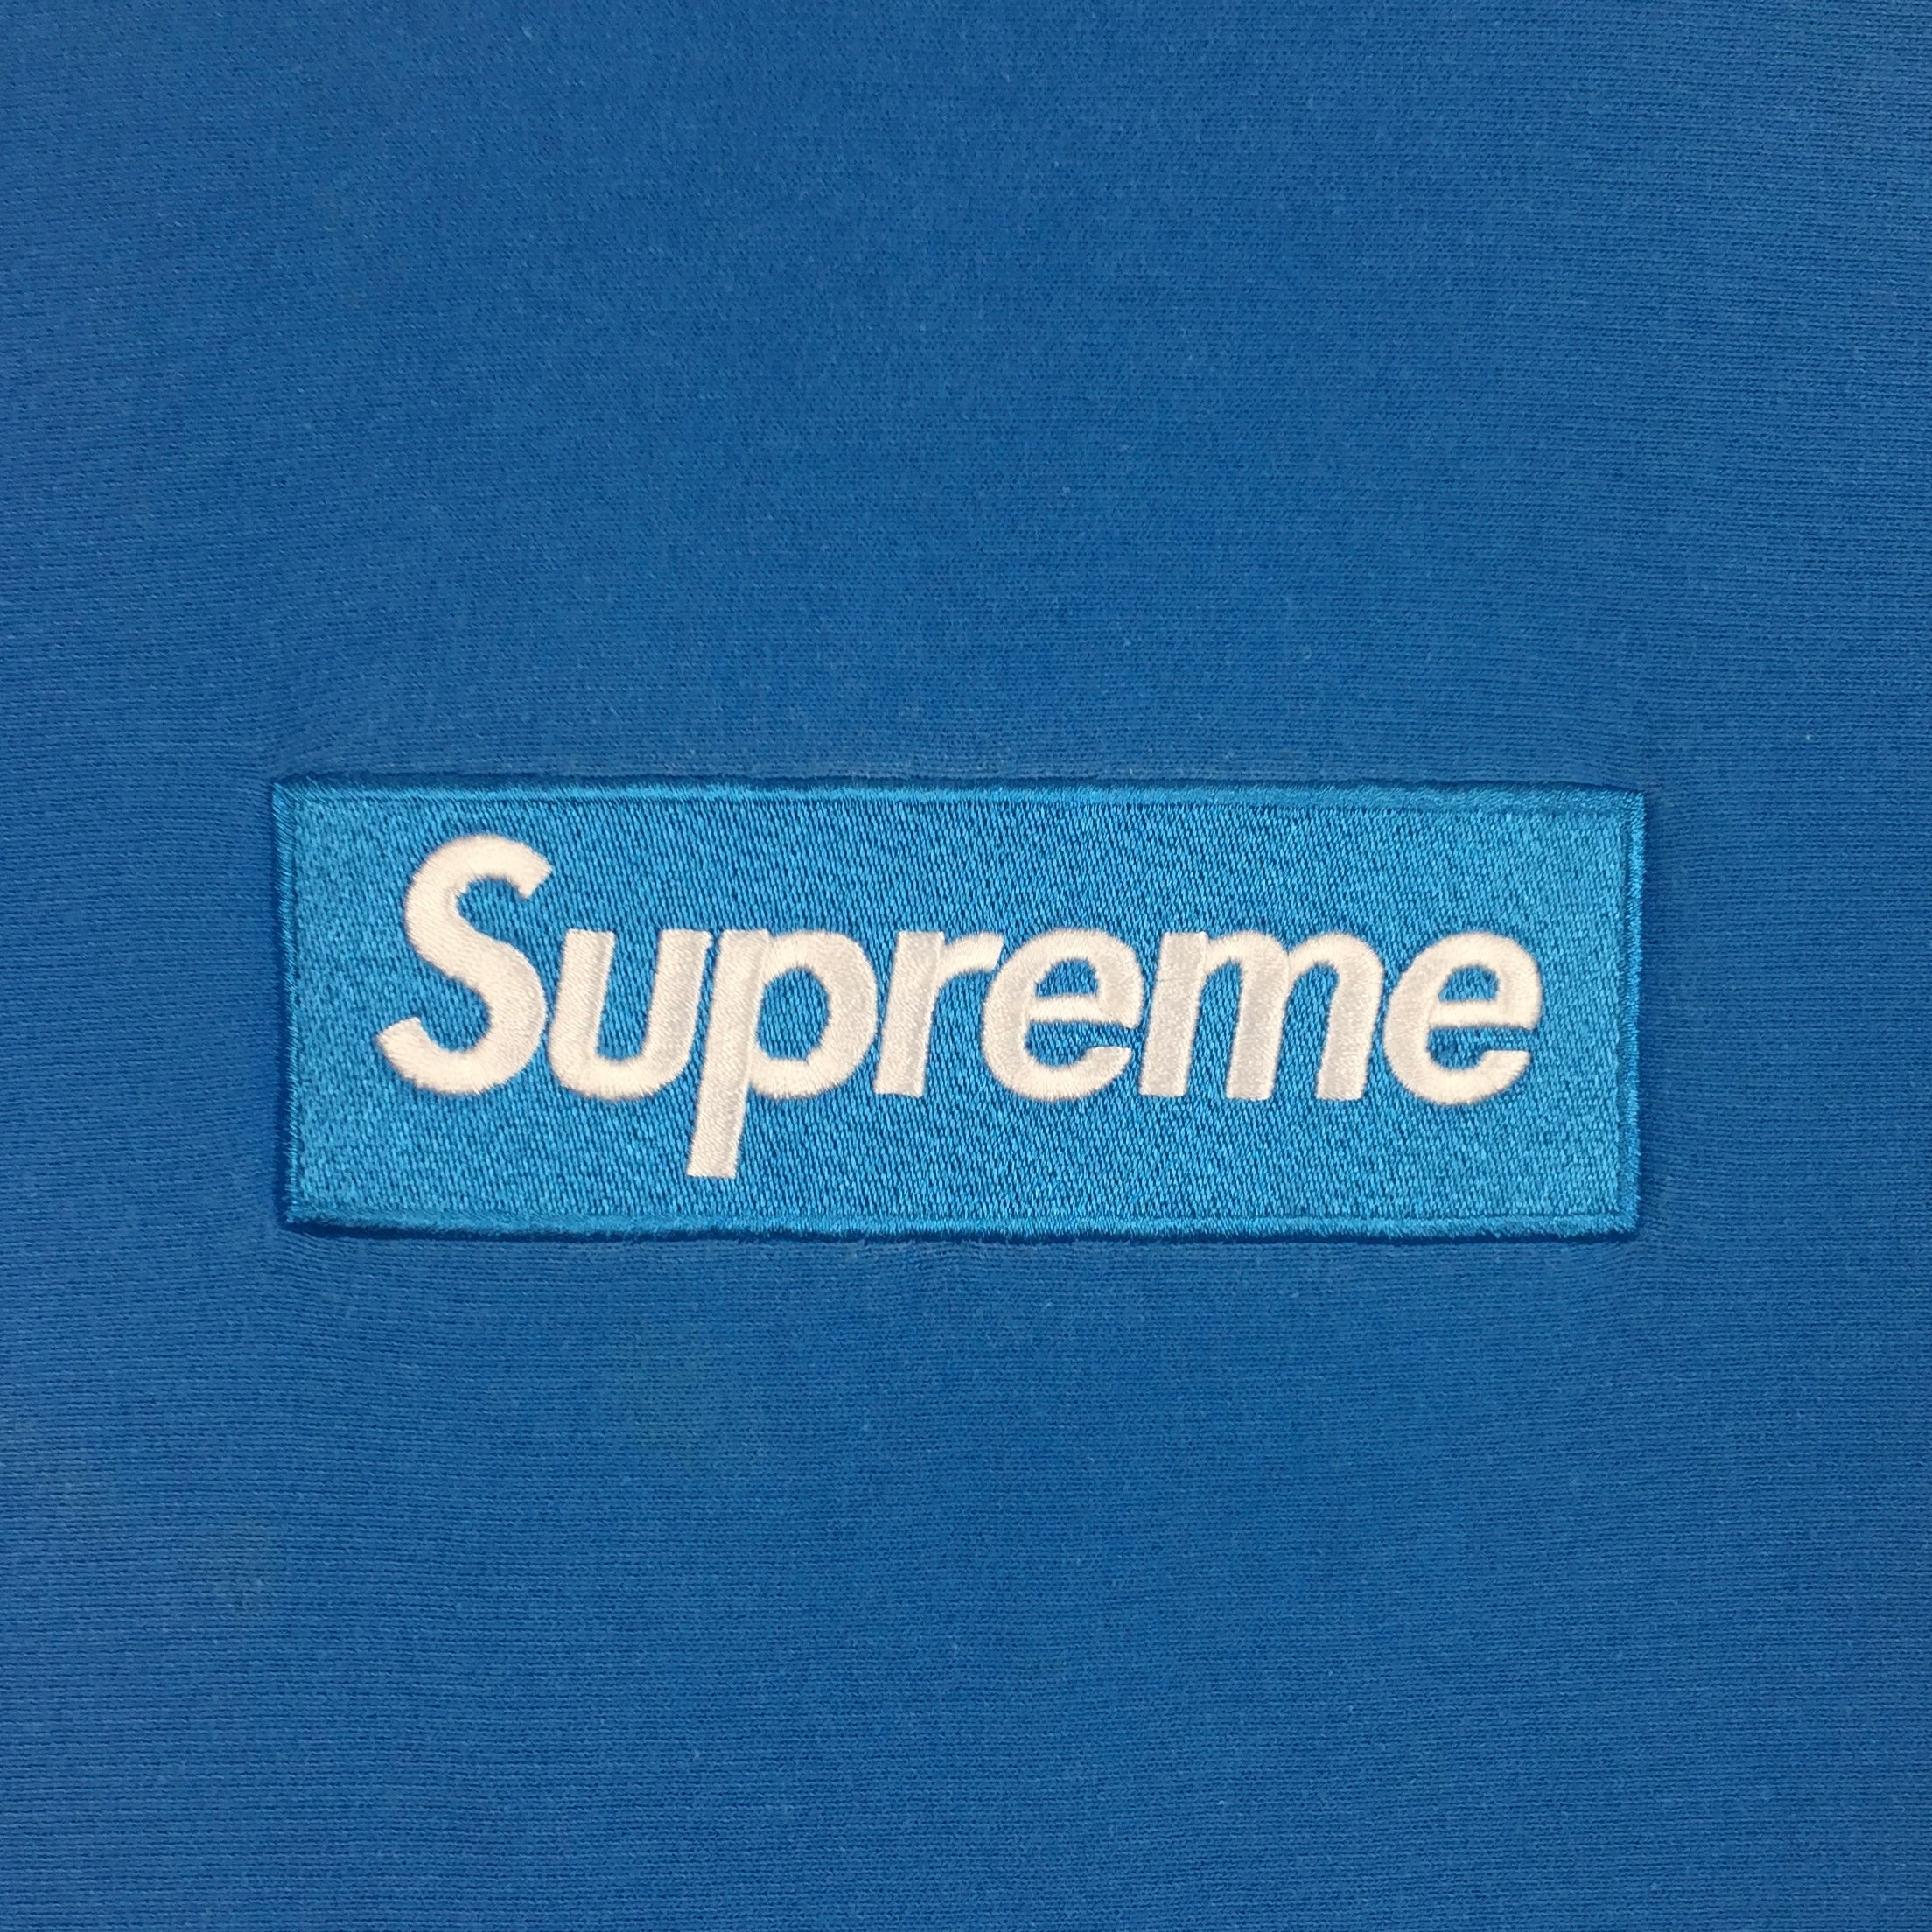 2018 Supreme Royal Blue Box Logo Crewneck